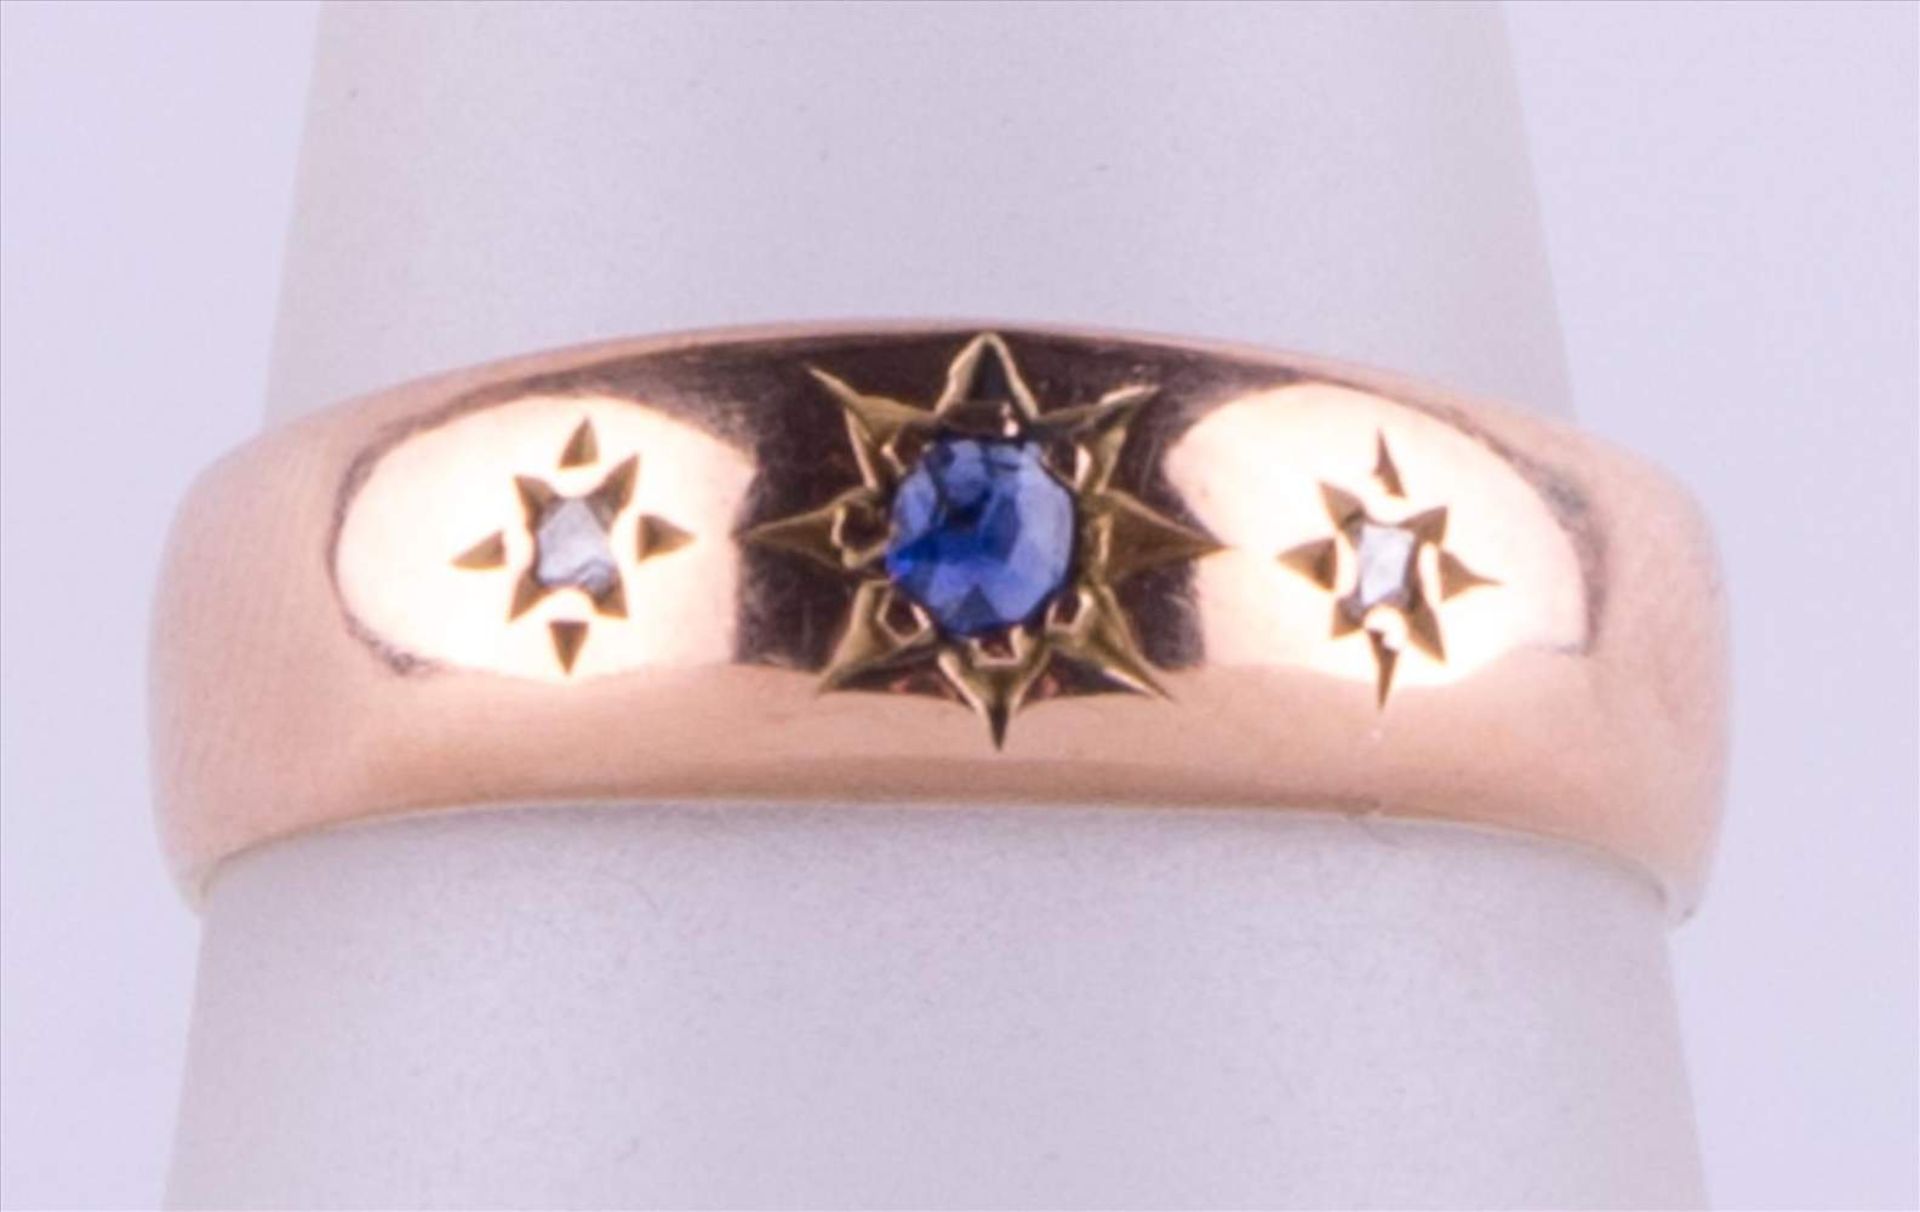 Damen Saphirring mit Brilliantfassung / Women's sapphire ring with brilliant setting 585/000 GG,